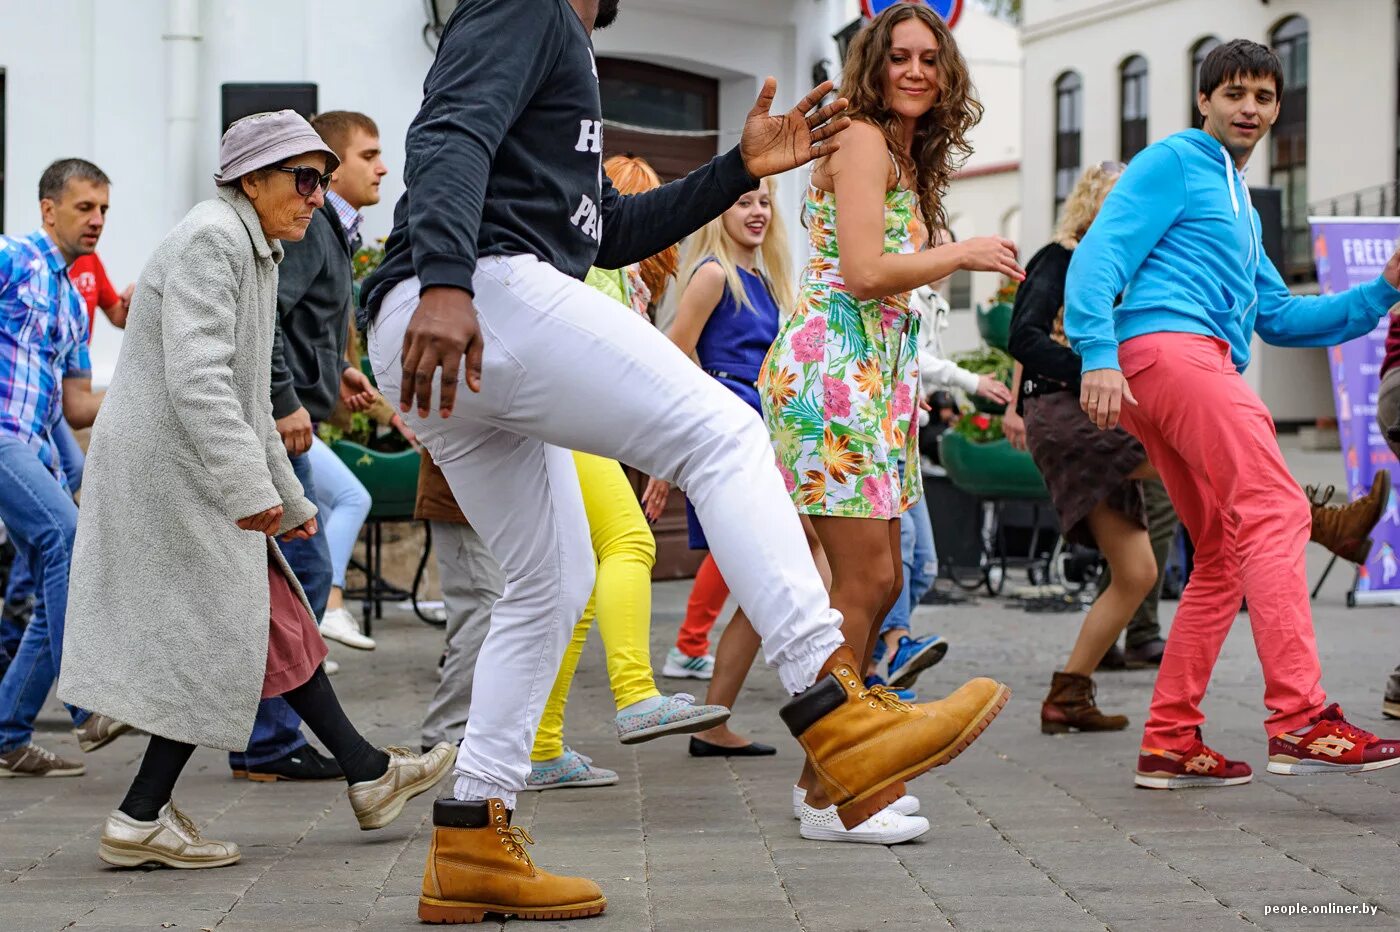 Песни танцы на улице. Танцы на улице. Сальса на улице. Танцующие люди на улице. Танцы молодежи на улице.